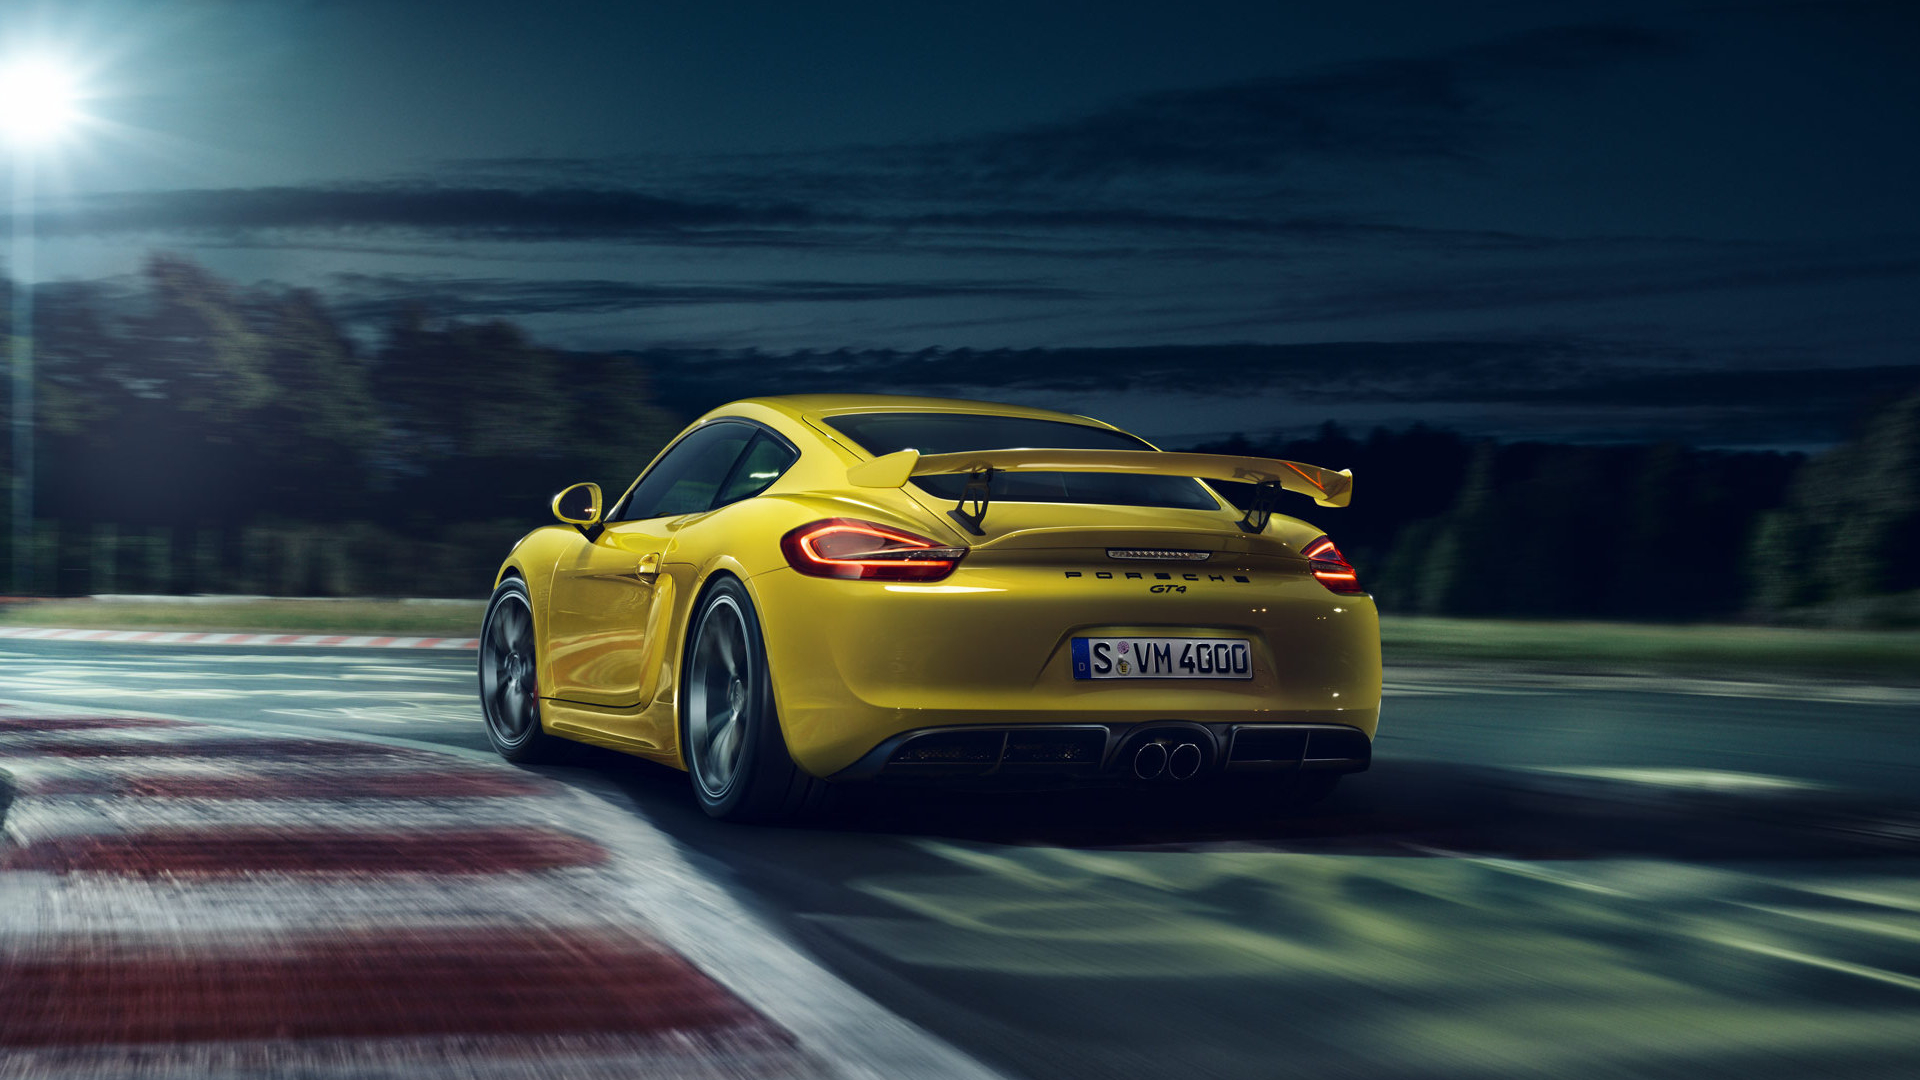 Download mobile wallpaper Porsche Cayman Gt4, Porsche Cayman, Porsche, Yellow Car, Vehicles, Car for free.